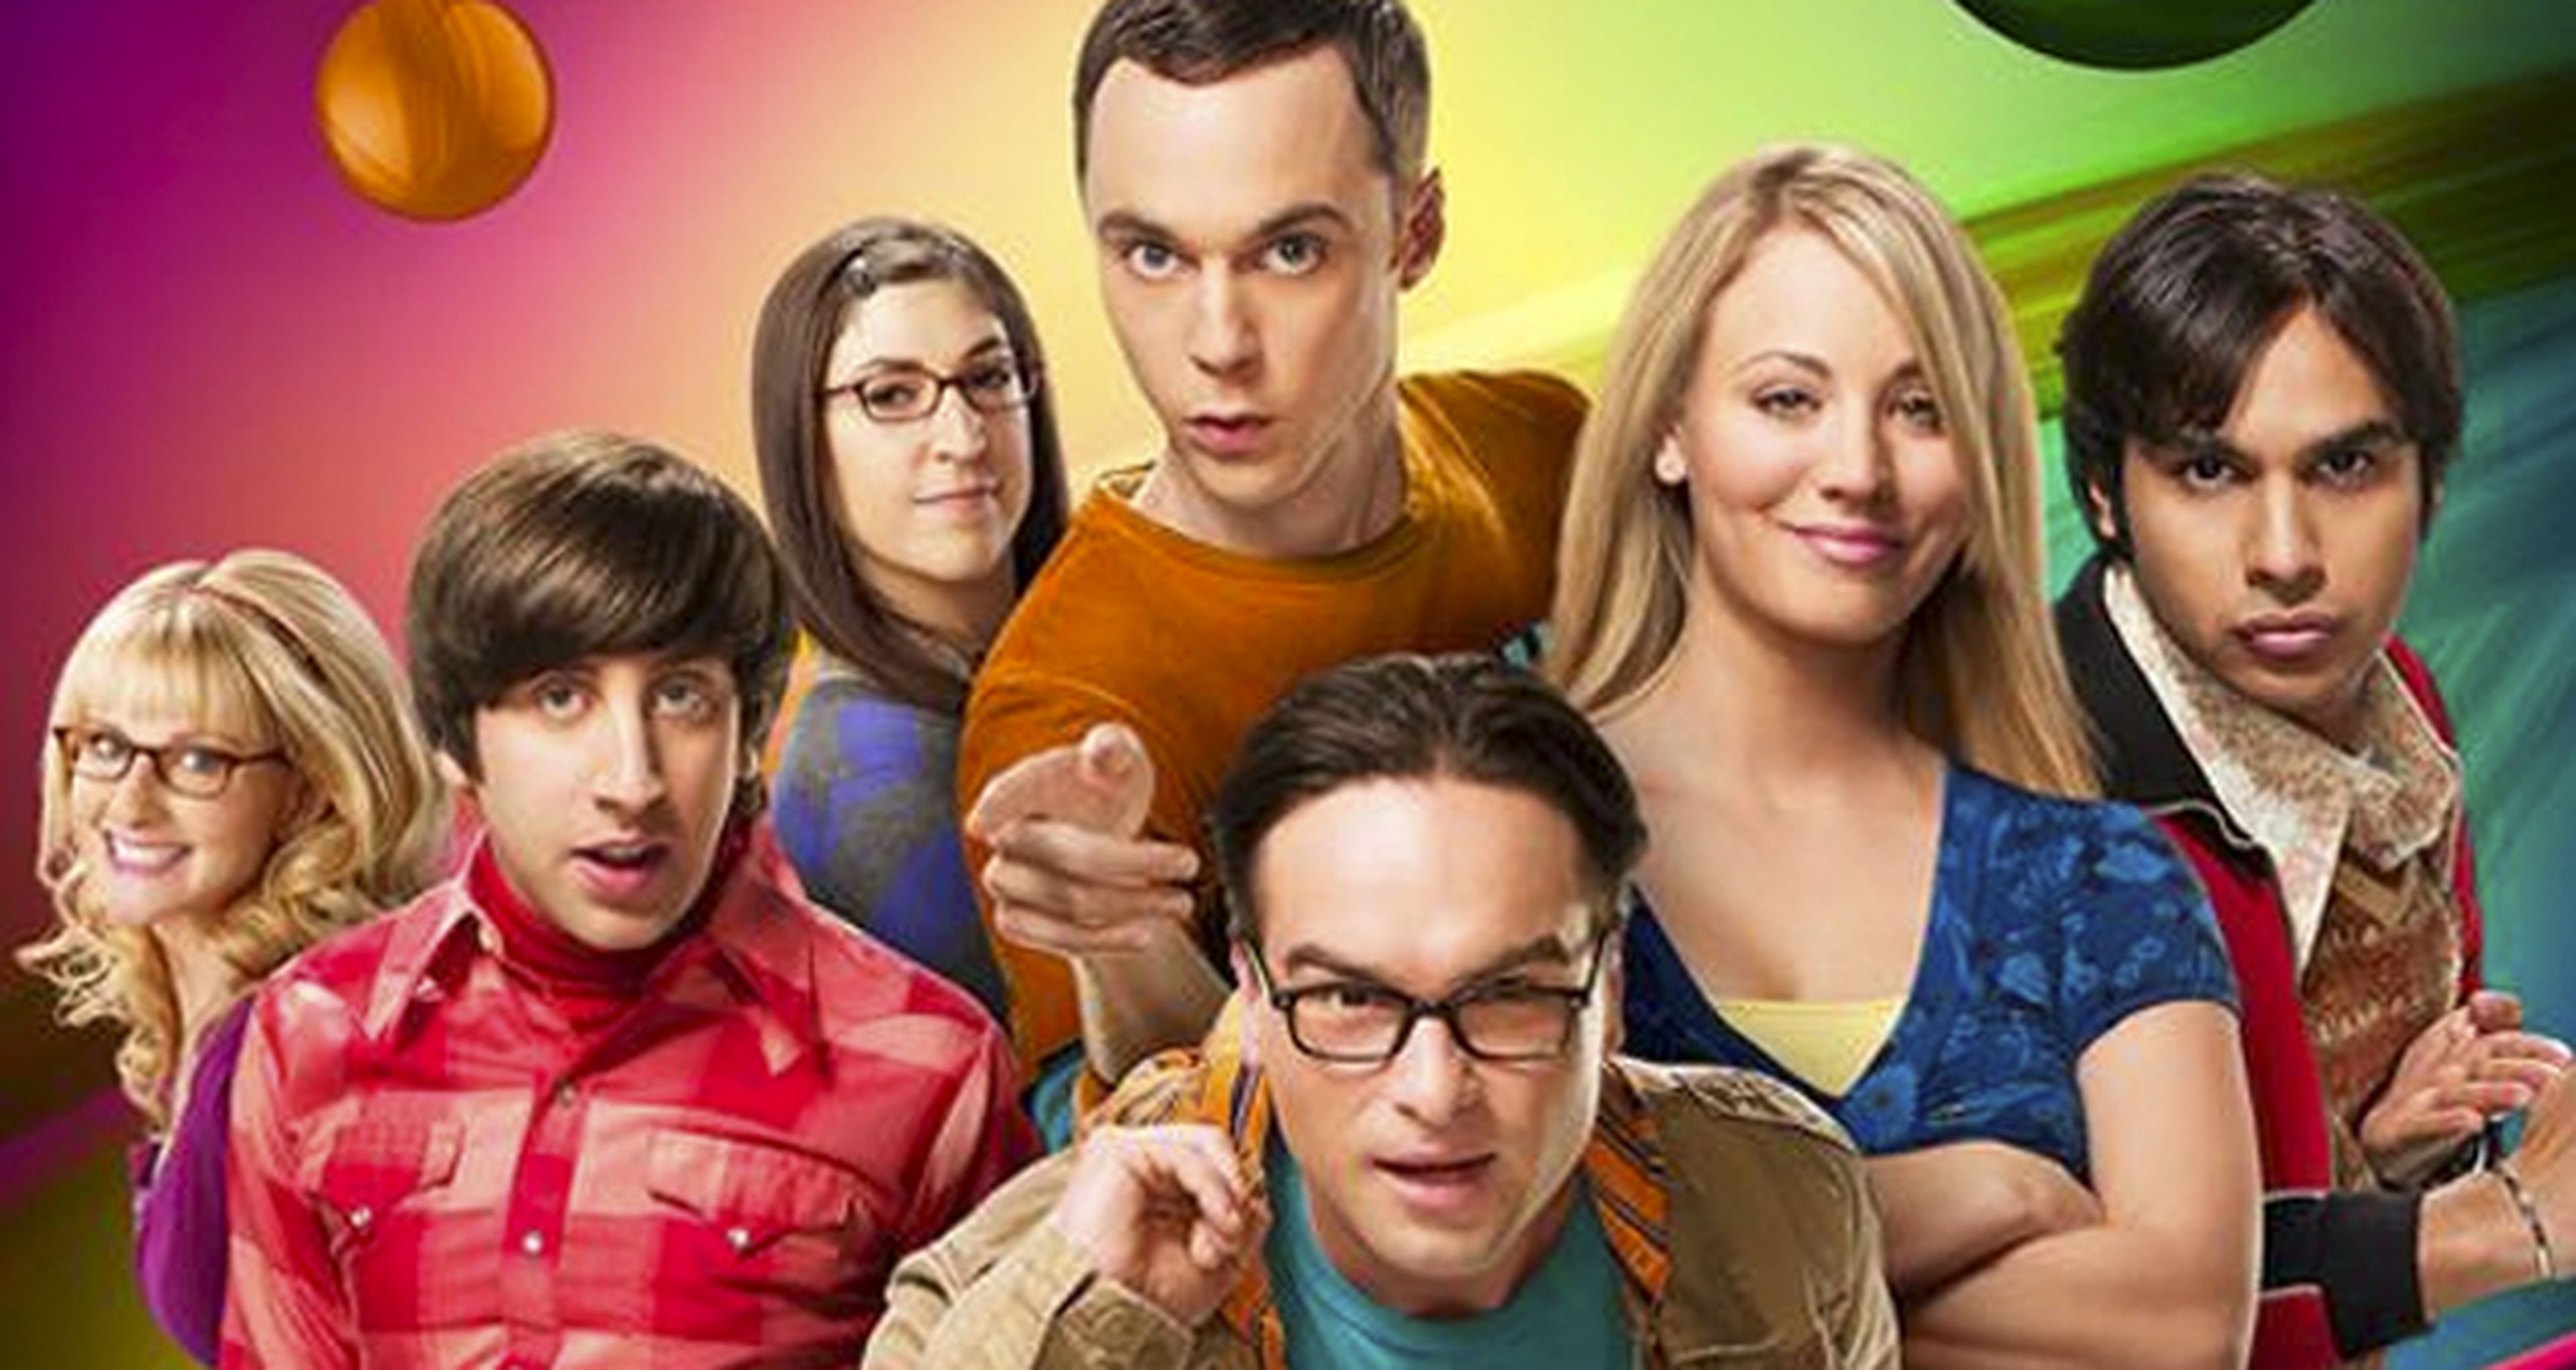 The Big Bang Theory estrena su 8ª temporada esta noche en TNT